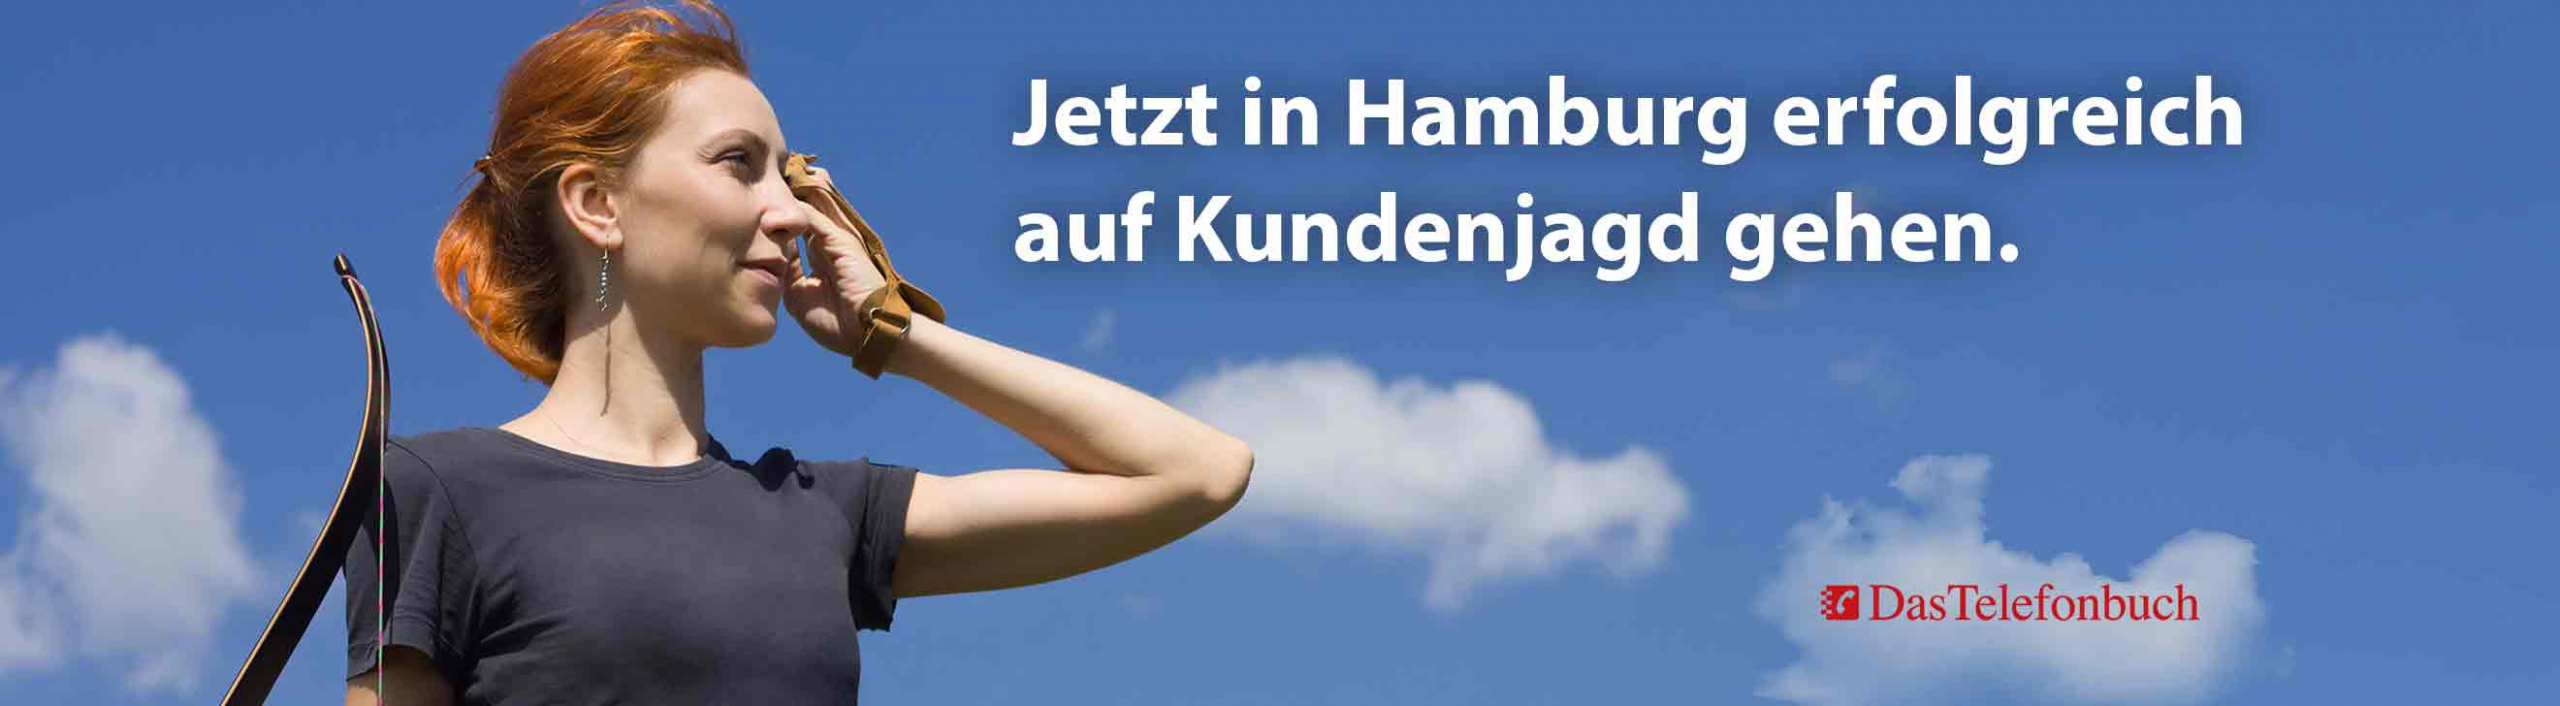 Jetzt erfolgreich auf Kundenjagd gehen mit Das Telefonbuch Hamburg